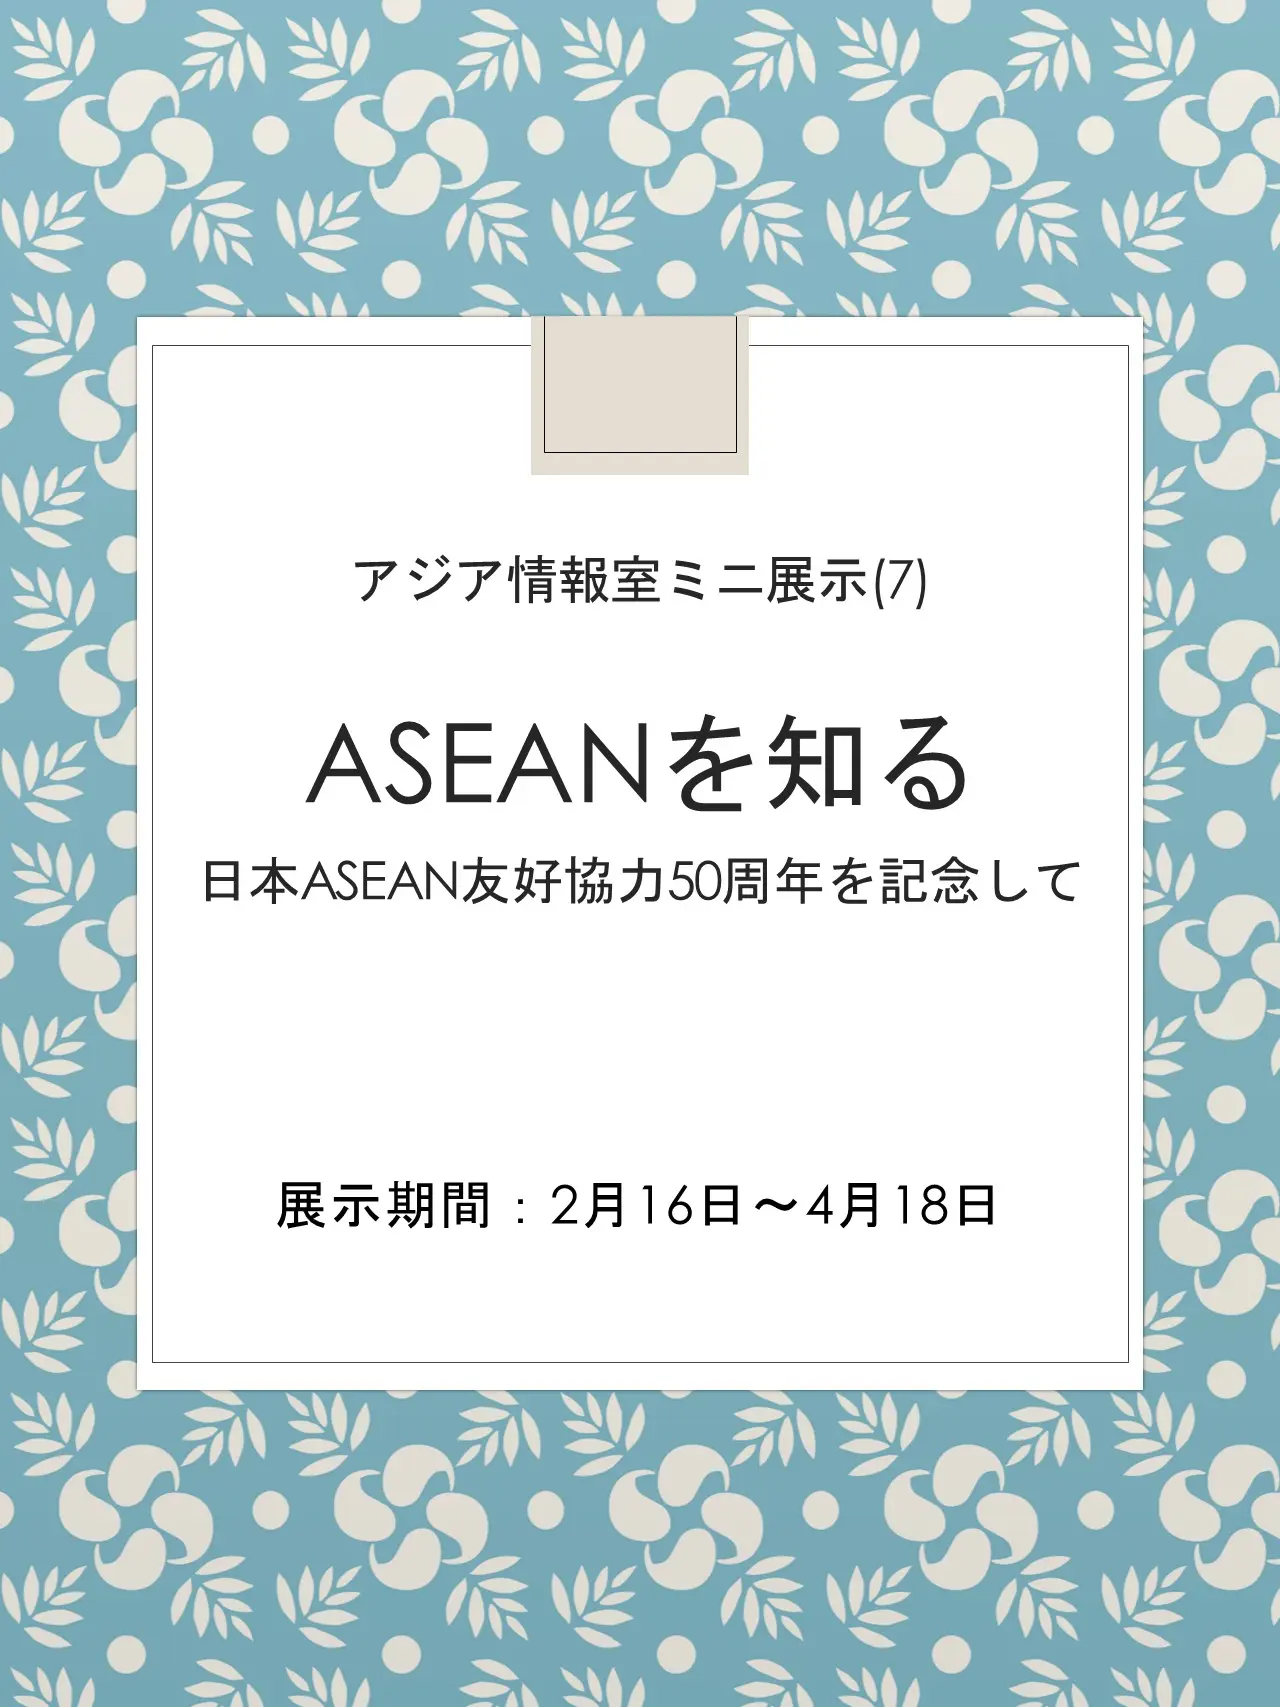 ミニ展示「ASEANを知る～日本ASEAN友好協力50周年を記念して」のポスター画像